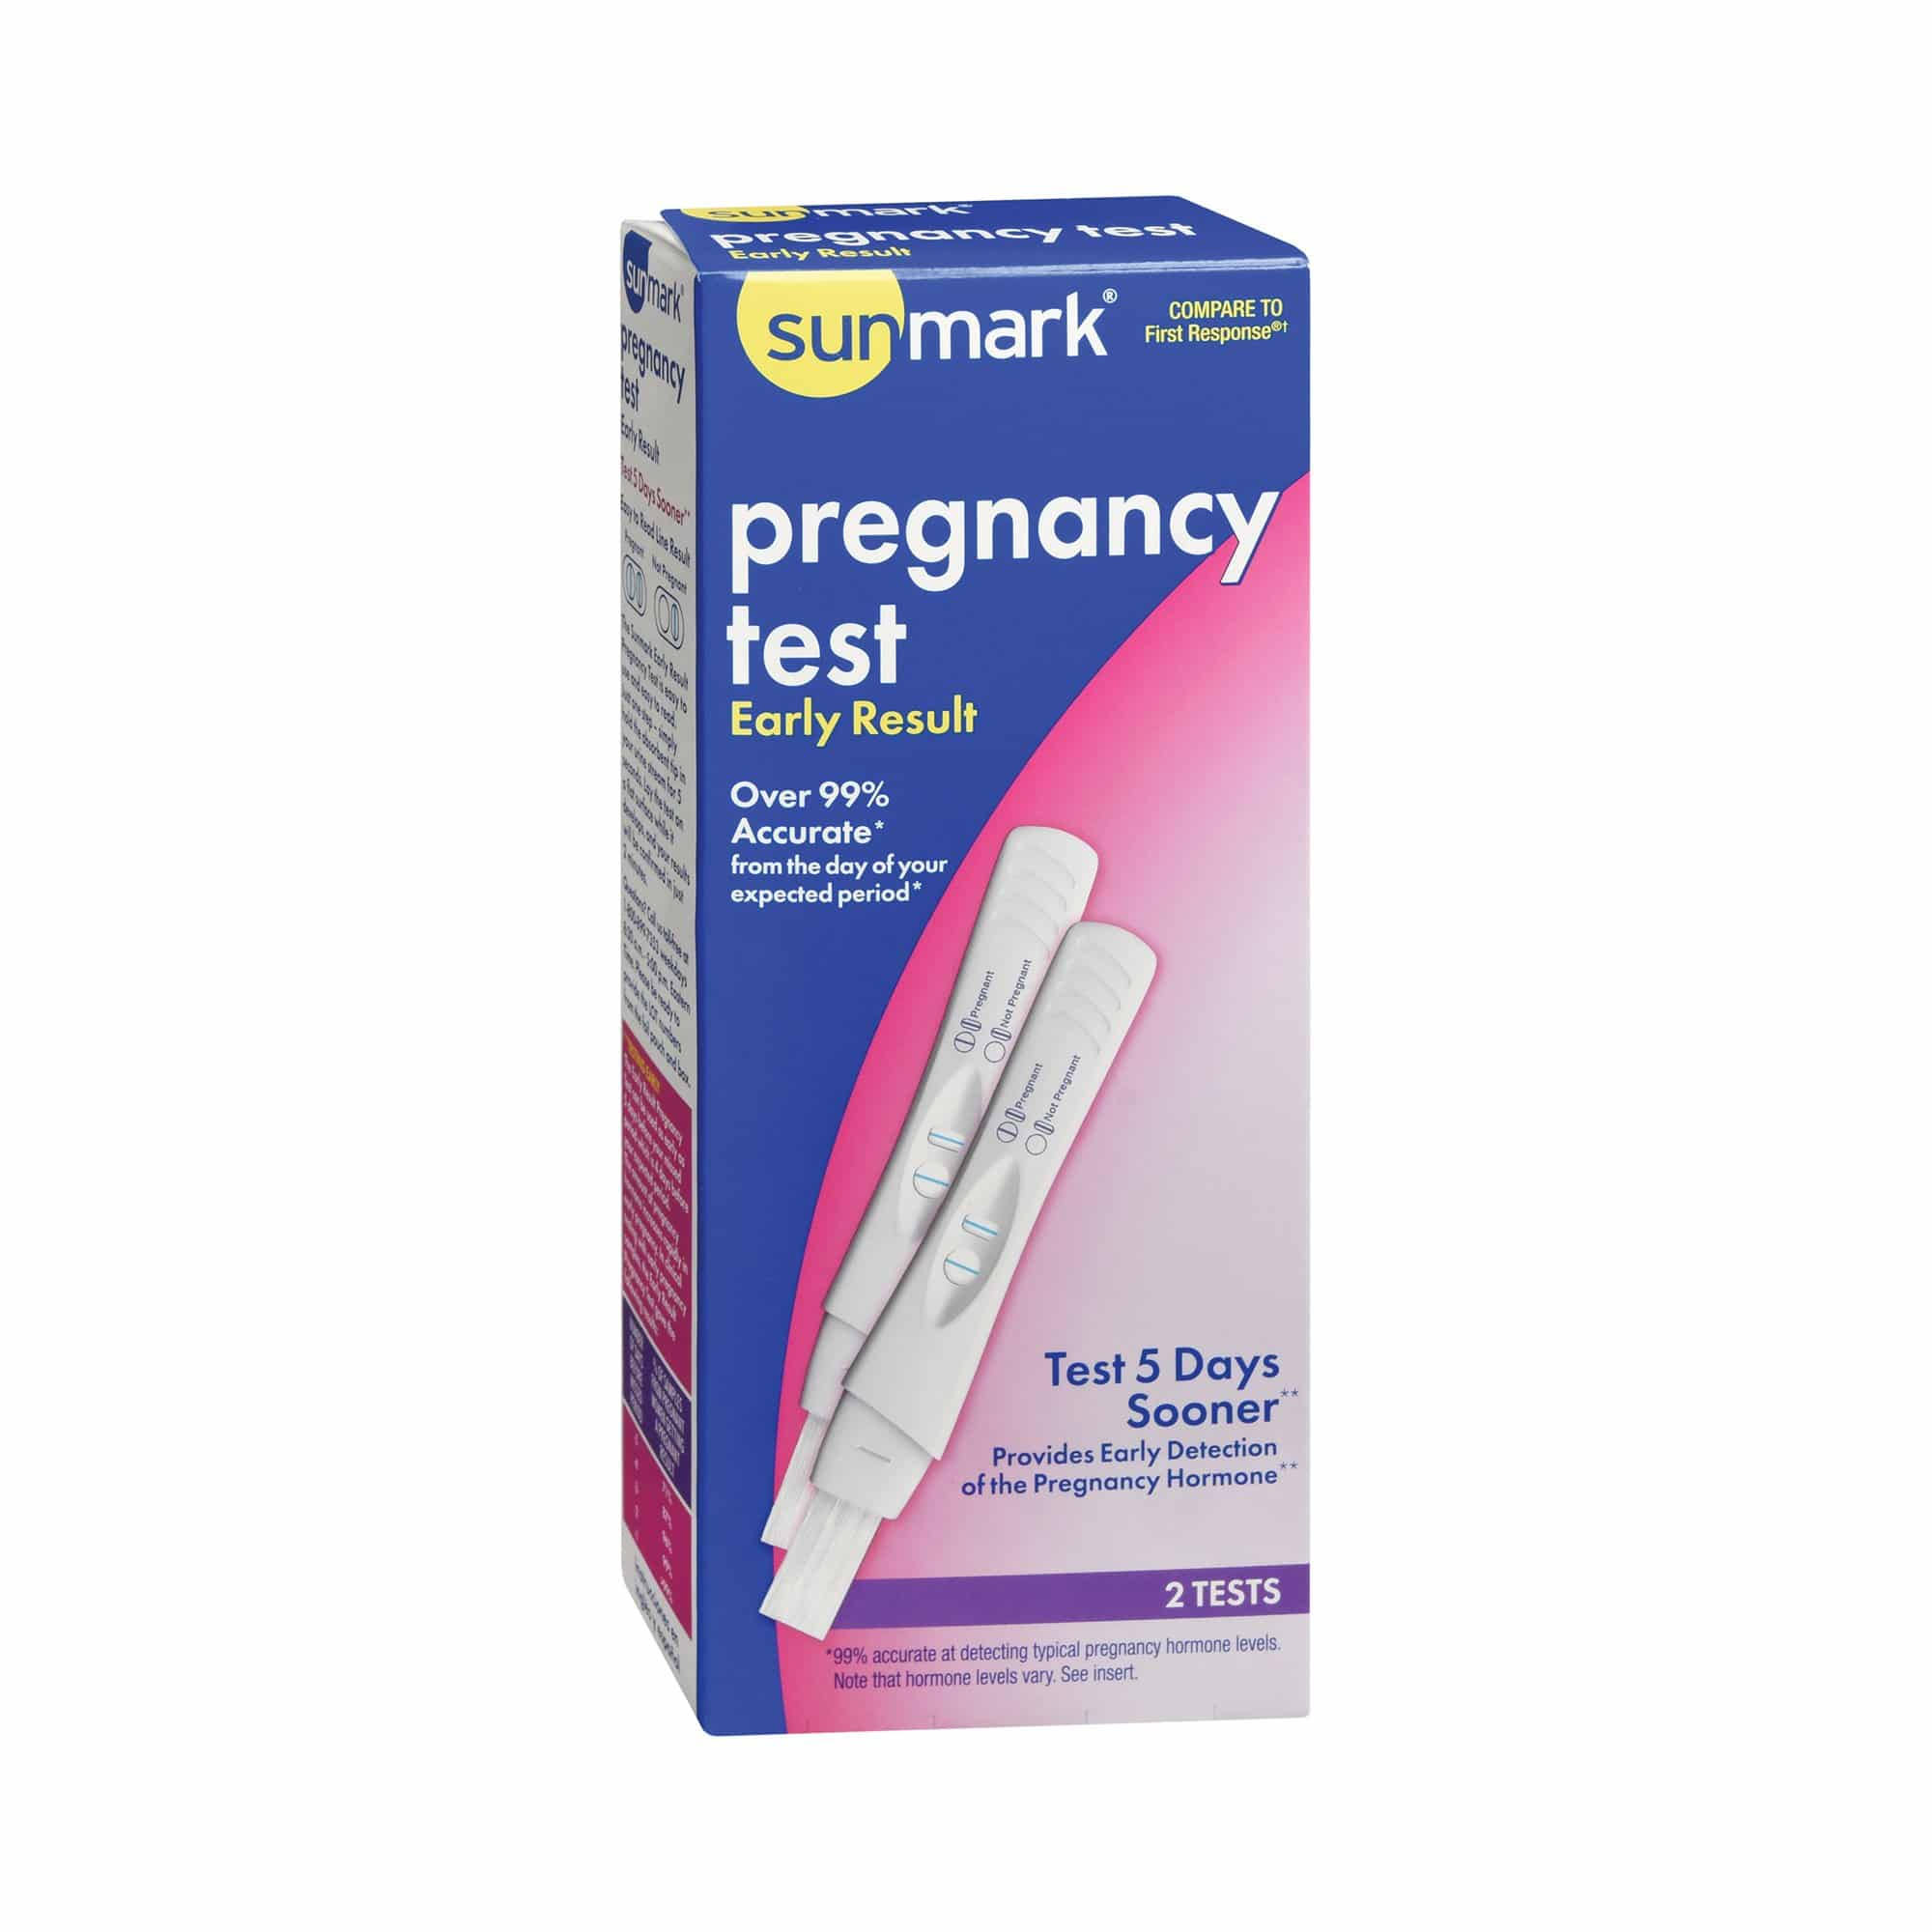 Sunmark Pregnancy Test - 2 Pack